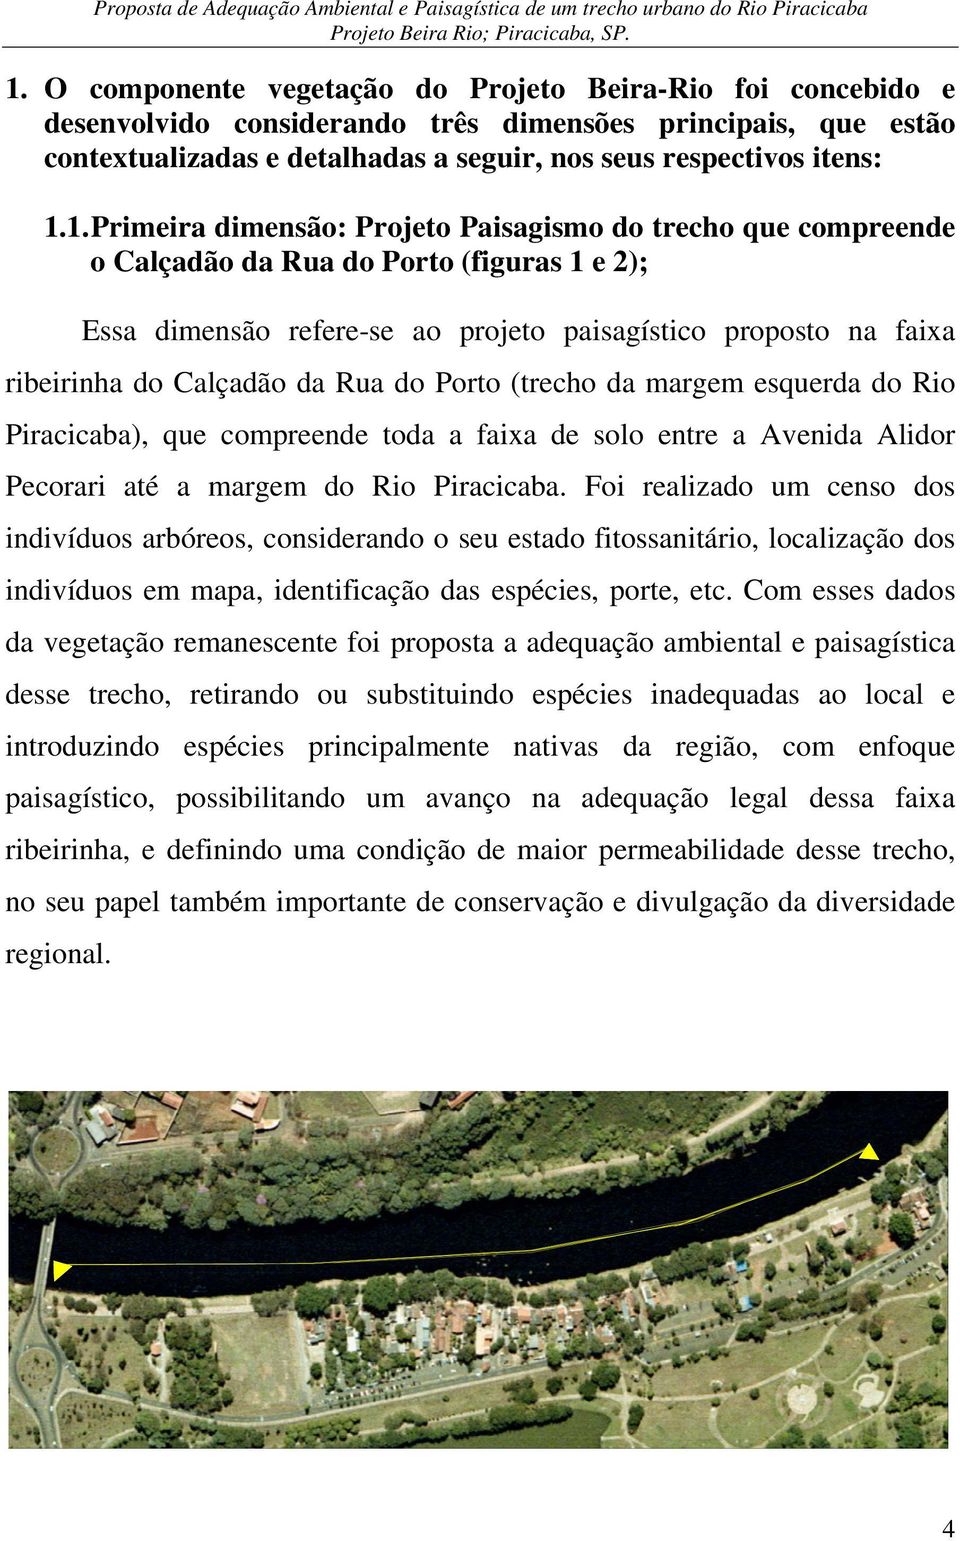 1. Primeira dimensão: Projeto Paisagismo do trecho que compreende o Calçadão da Rua do Porto (figuras 1 e 2); Essa dimensão refere-se ao projeto paisagístico proposto na faixa ribeirinha do Calçadão